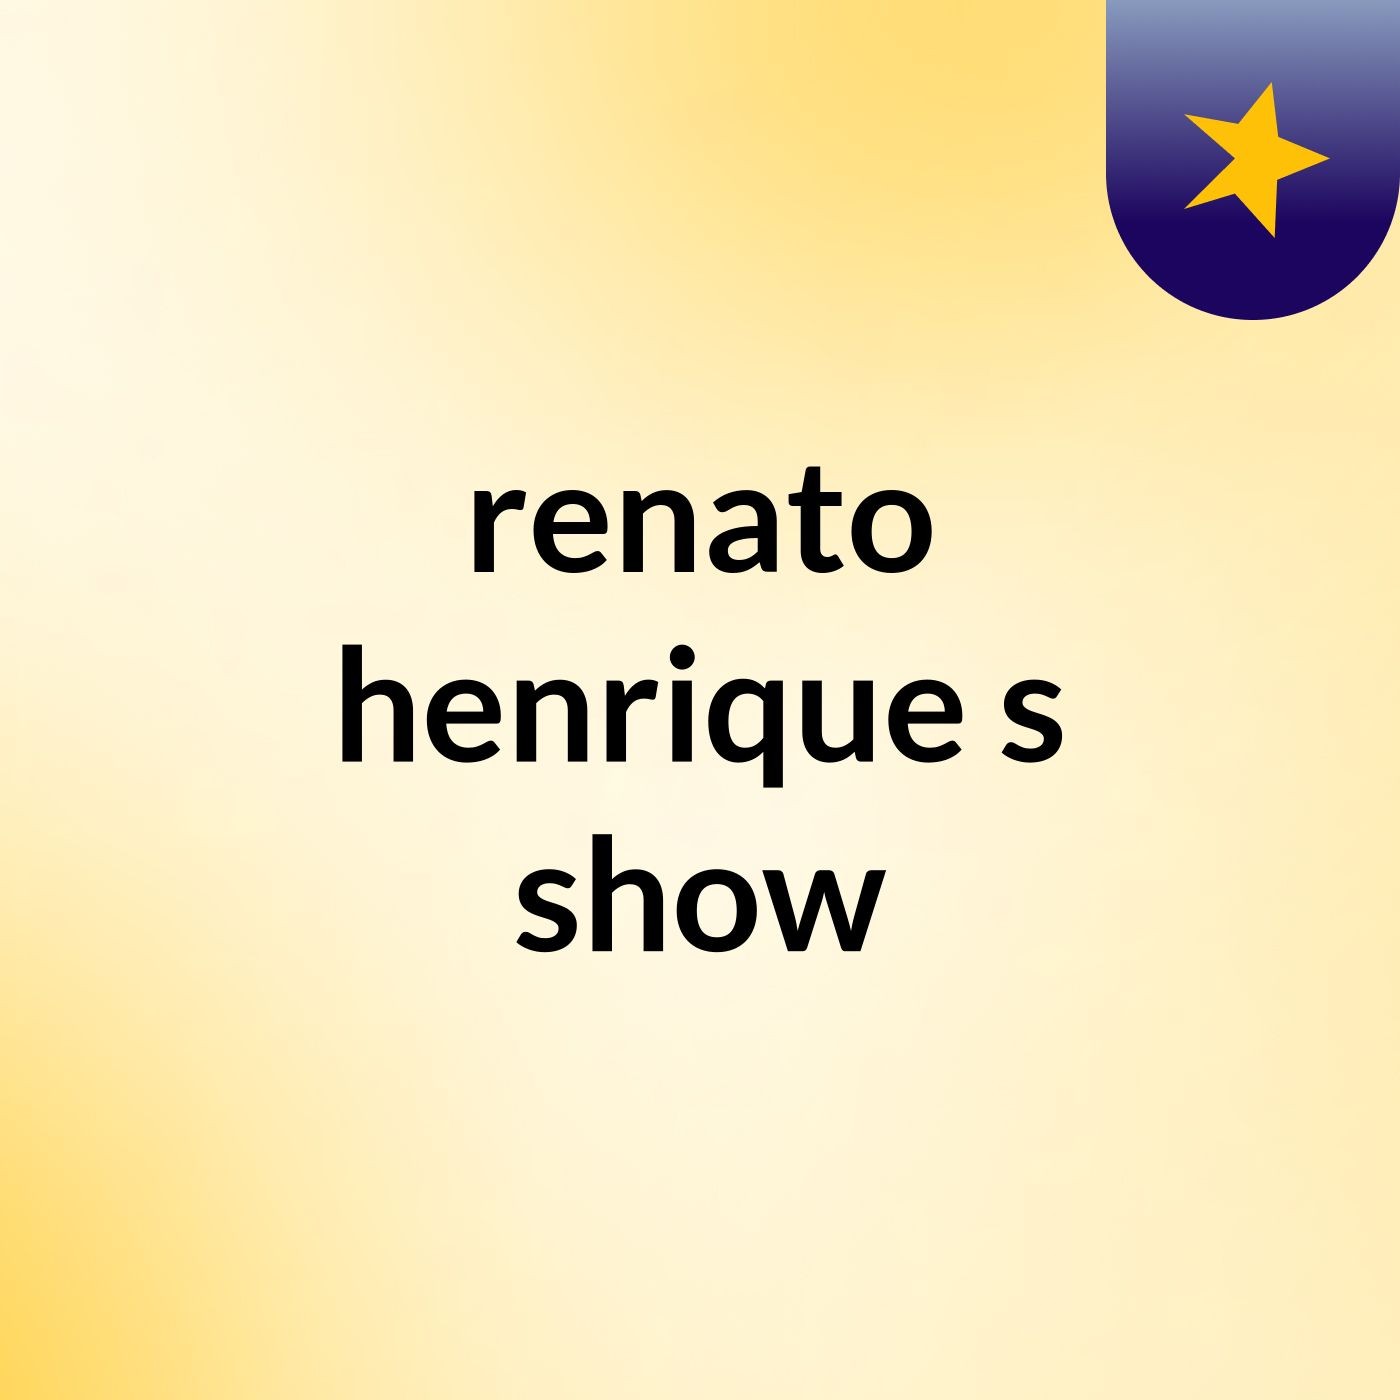 renato henrique's show